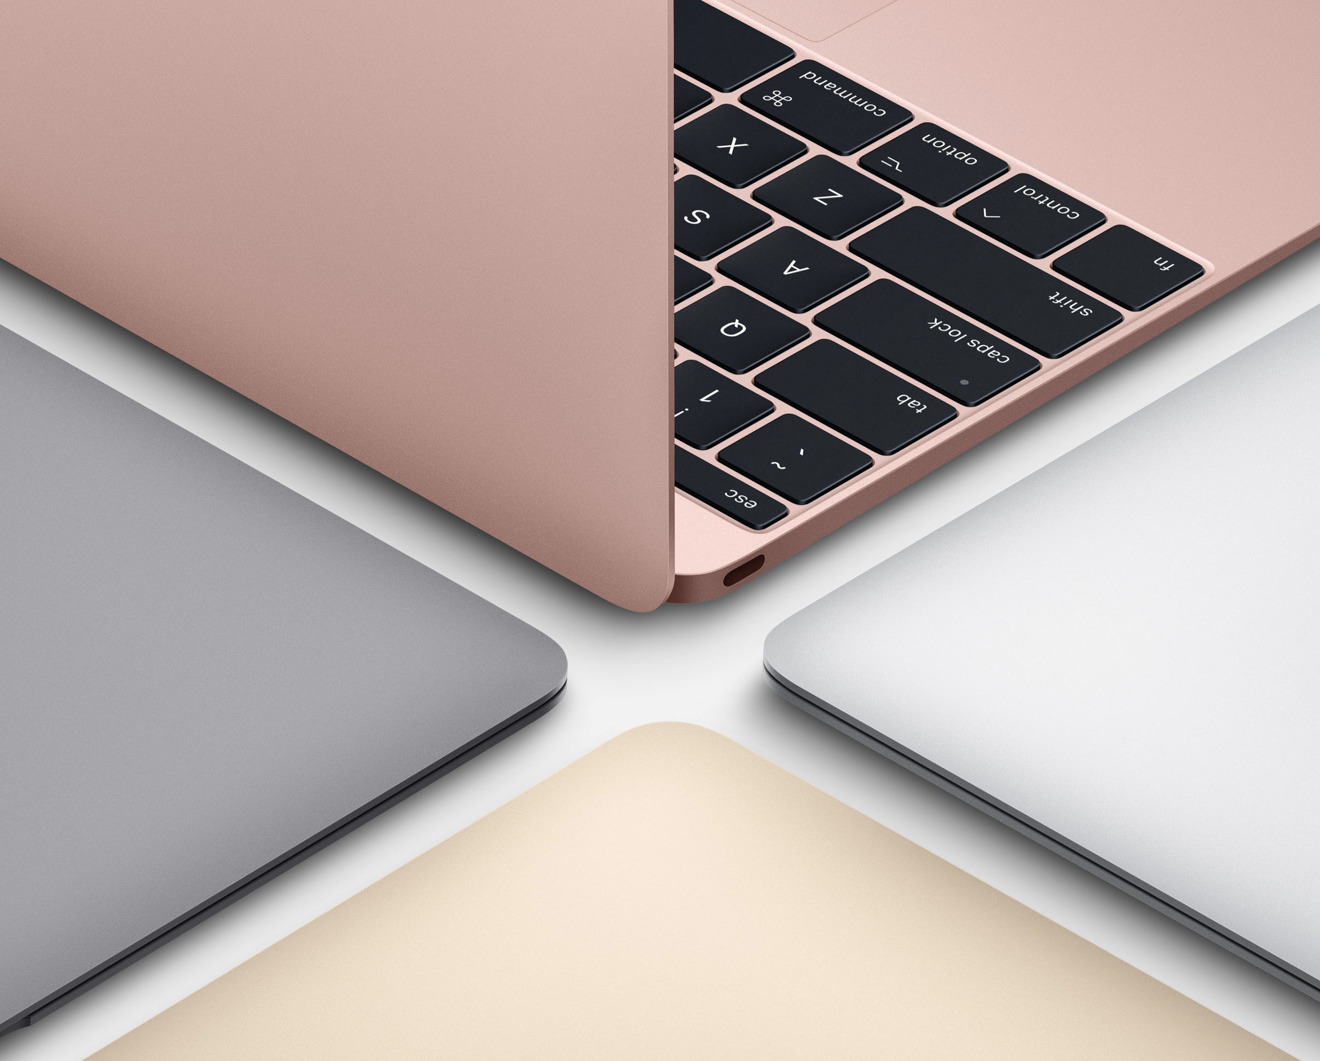 2017 Apple 12 inch MacBook coupon code